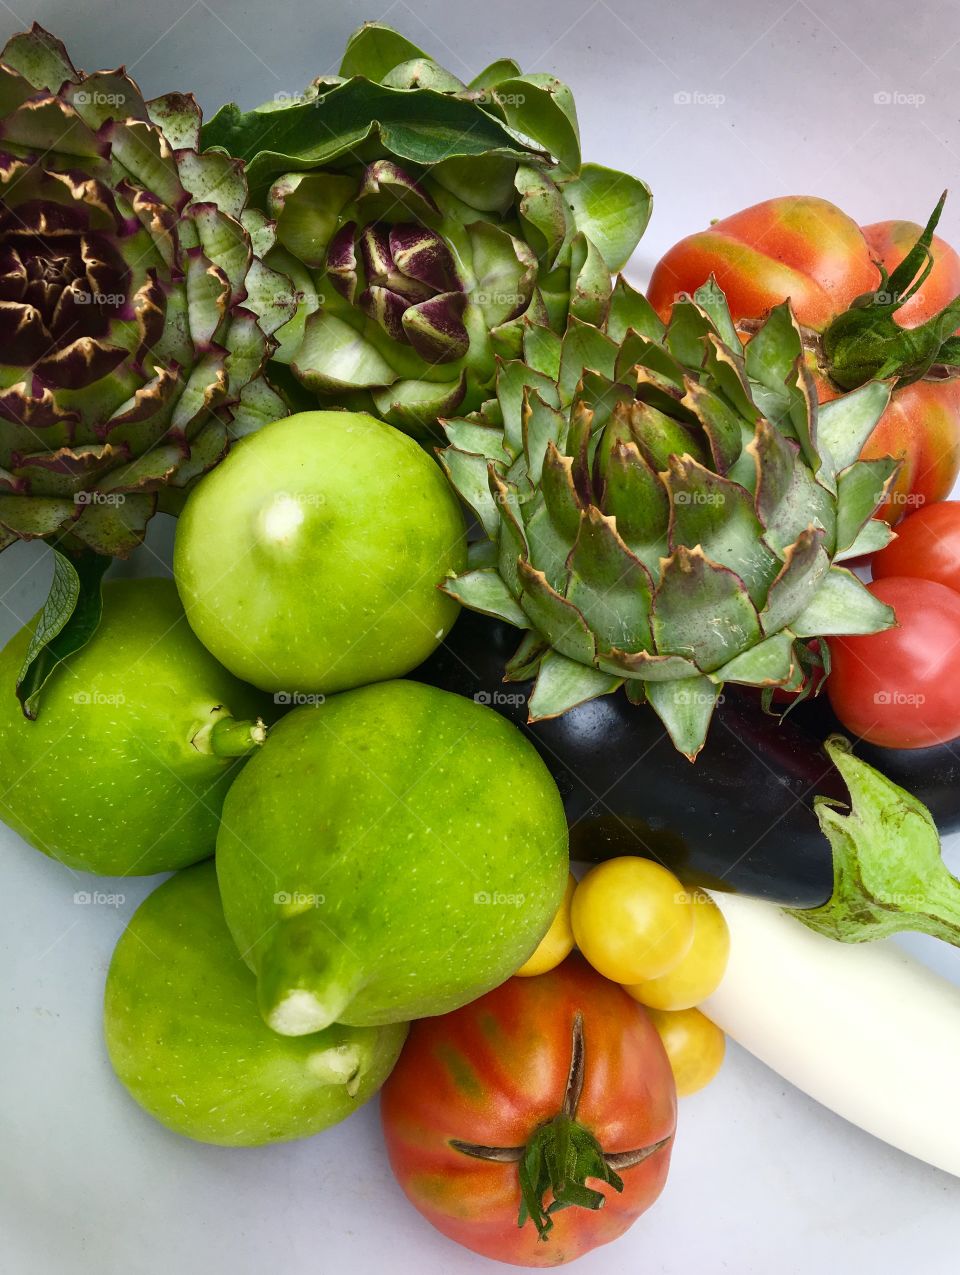 Fruits and vegetables gesund, frisch, gut